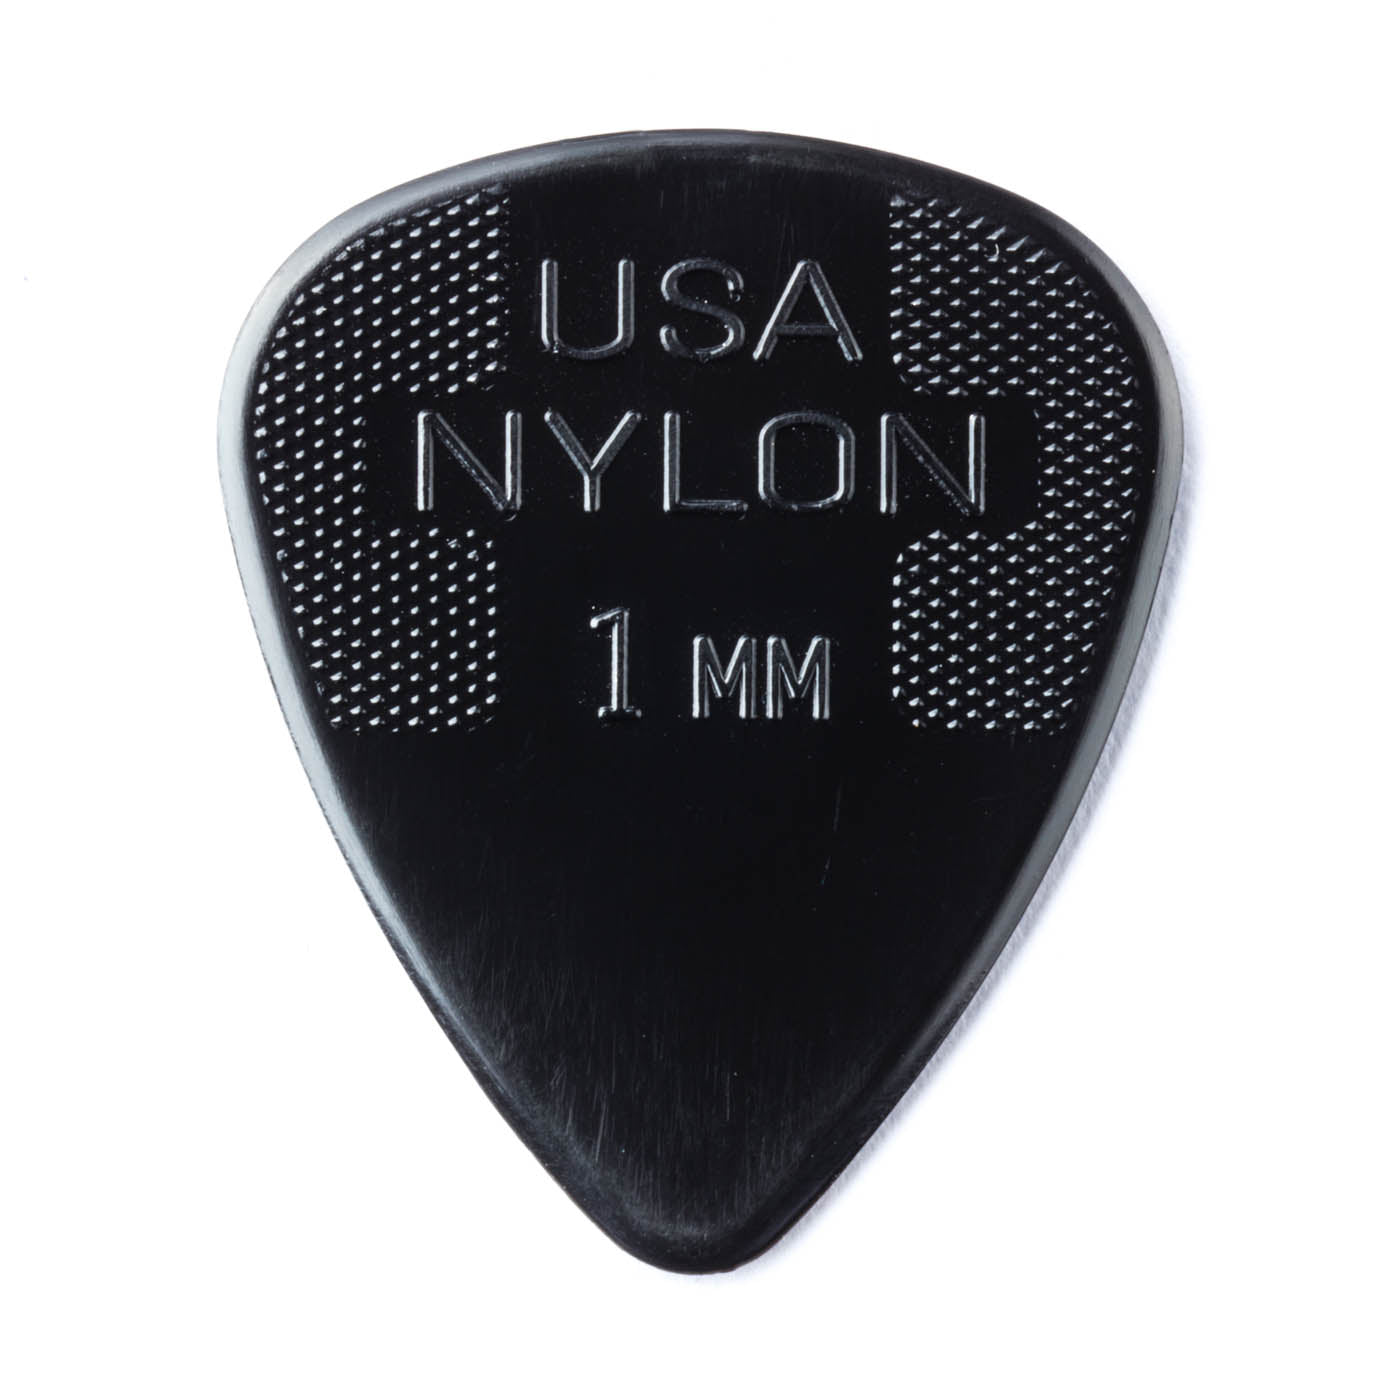 Jim Dunlop Nylon Standard Guitar Picks 1.00mm Bulk Pack of 72 picks